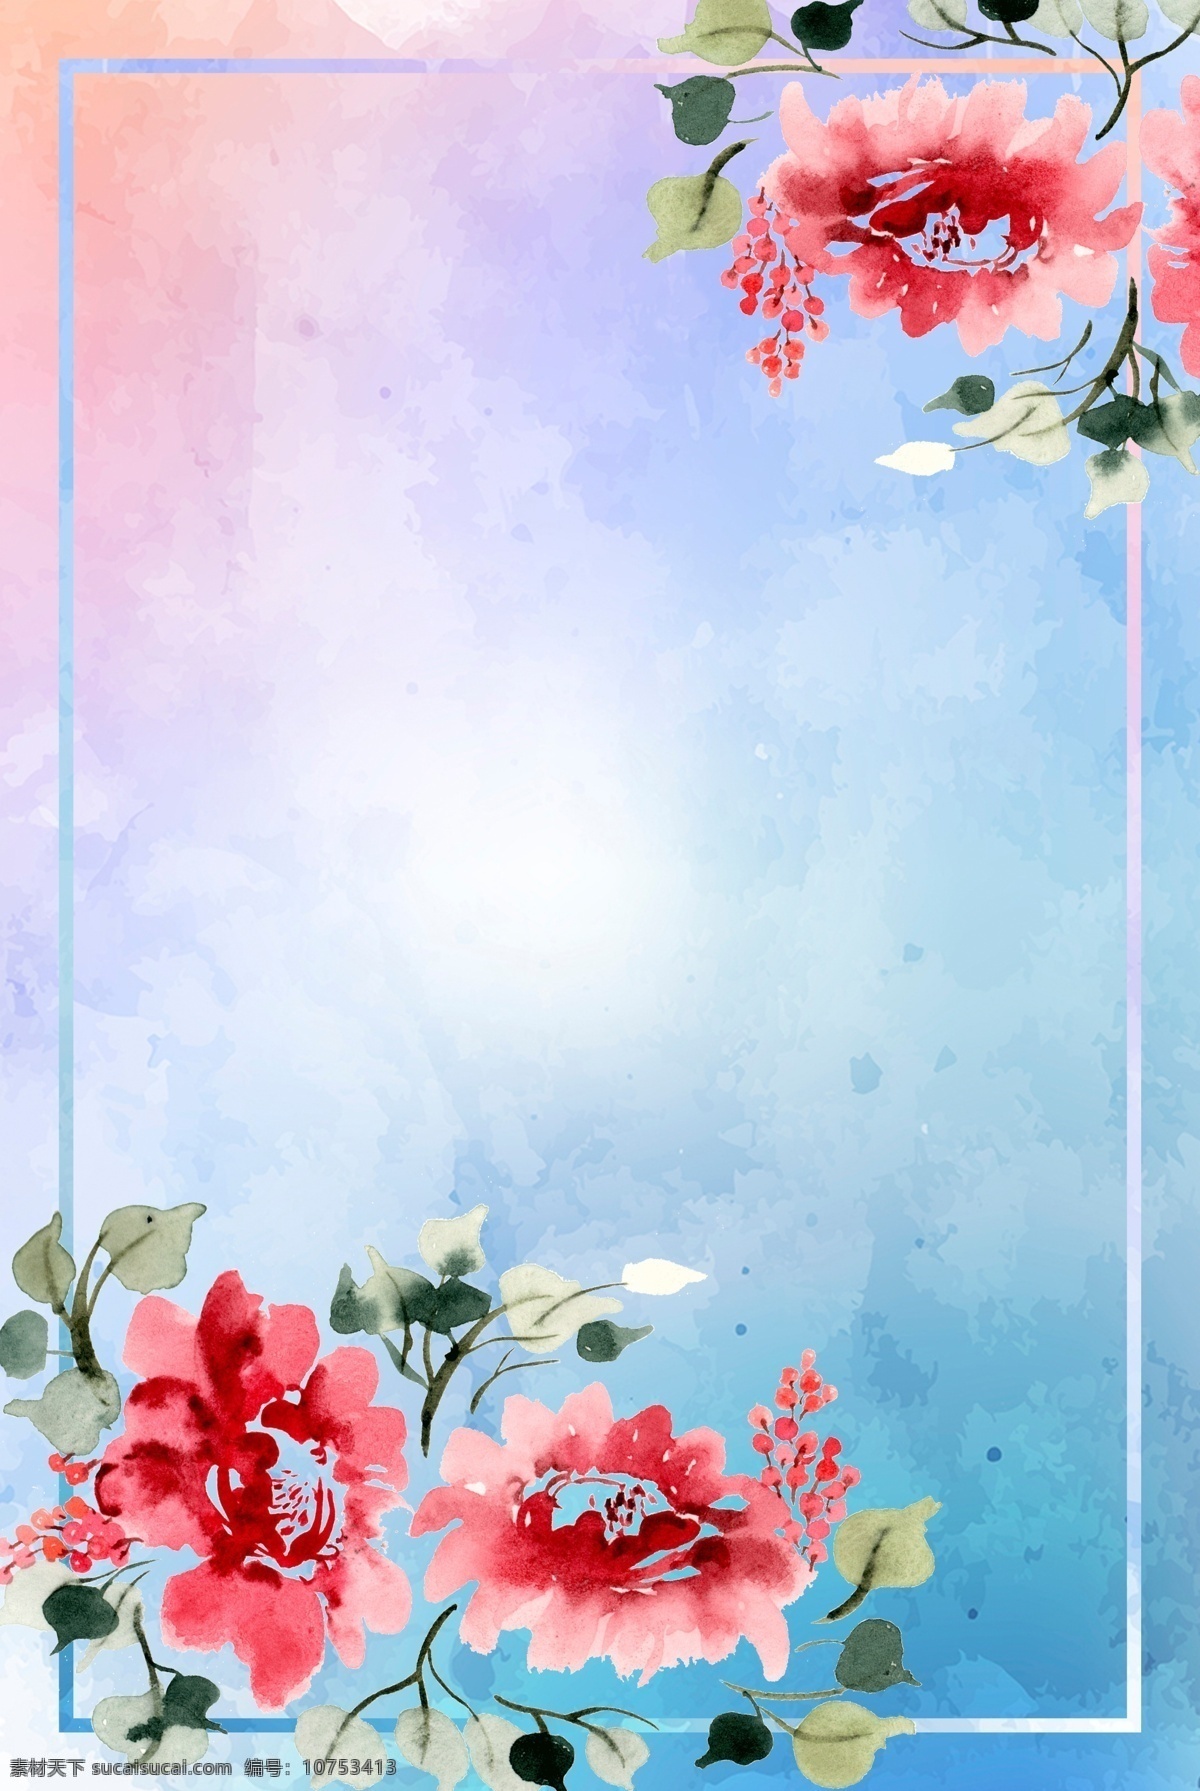 水彩 海报 背景 花朵 花卉 水彩背景 水彩素材 边框 手绘 矢量 矢量海报